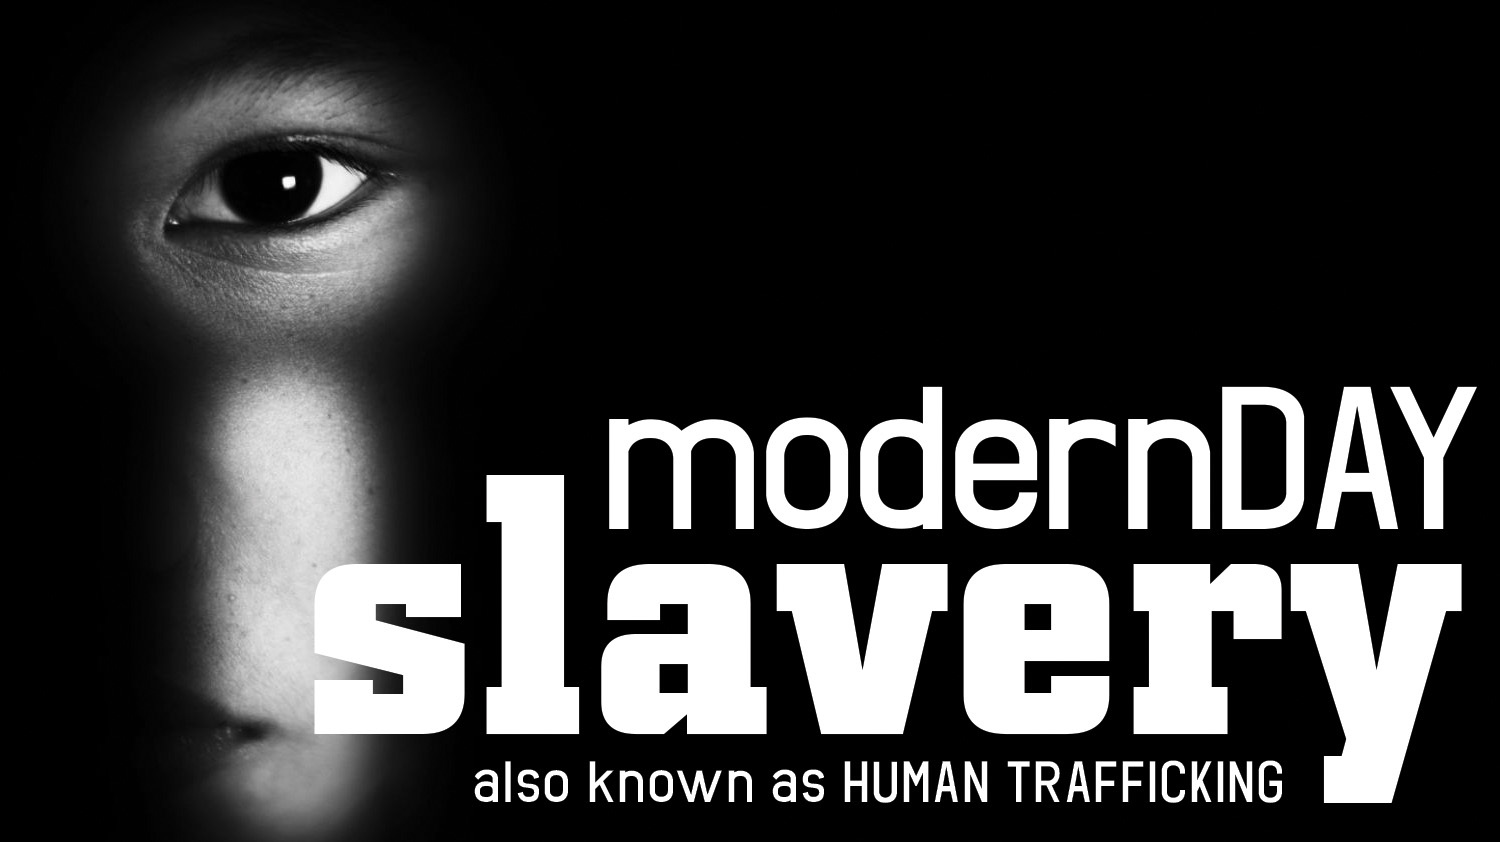 现代奴隶制:贩卖人口的恐怖. Gordon :: US Army MWR